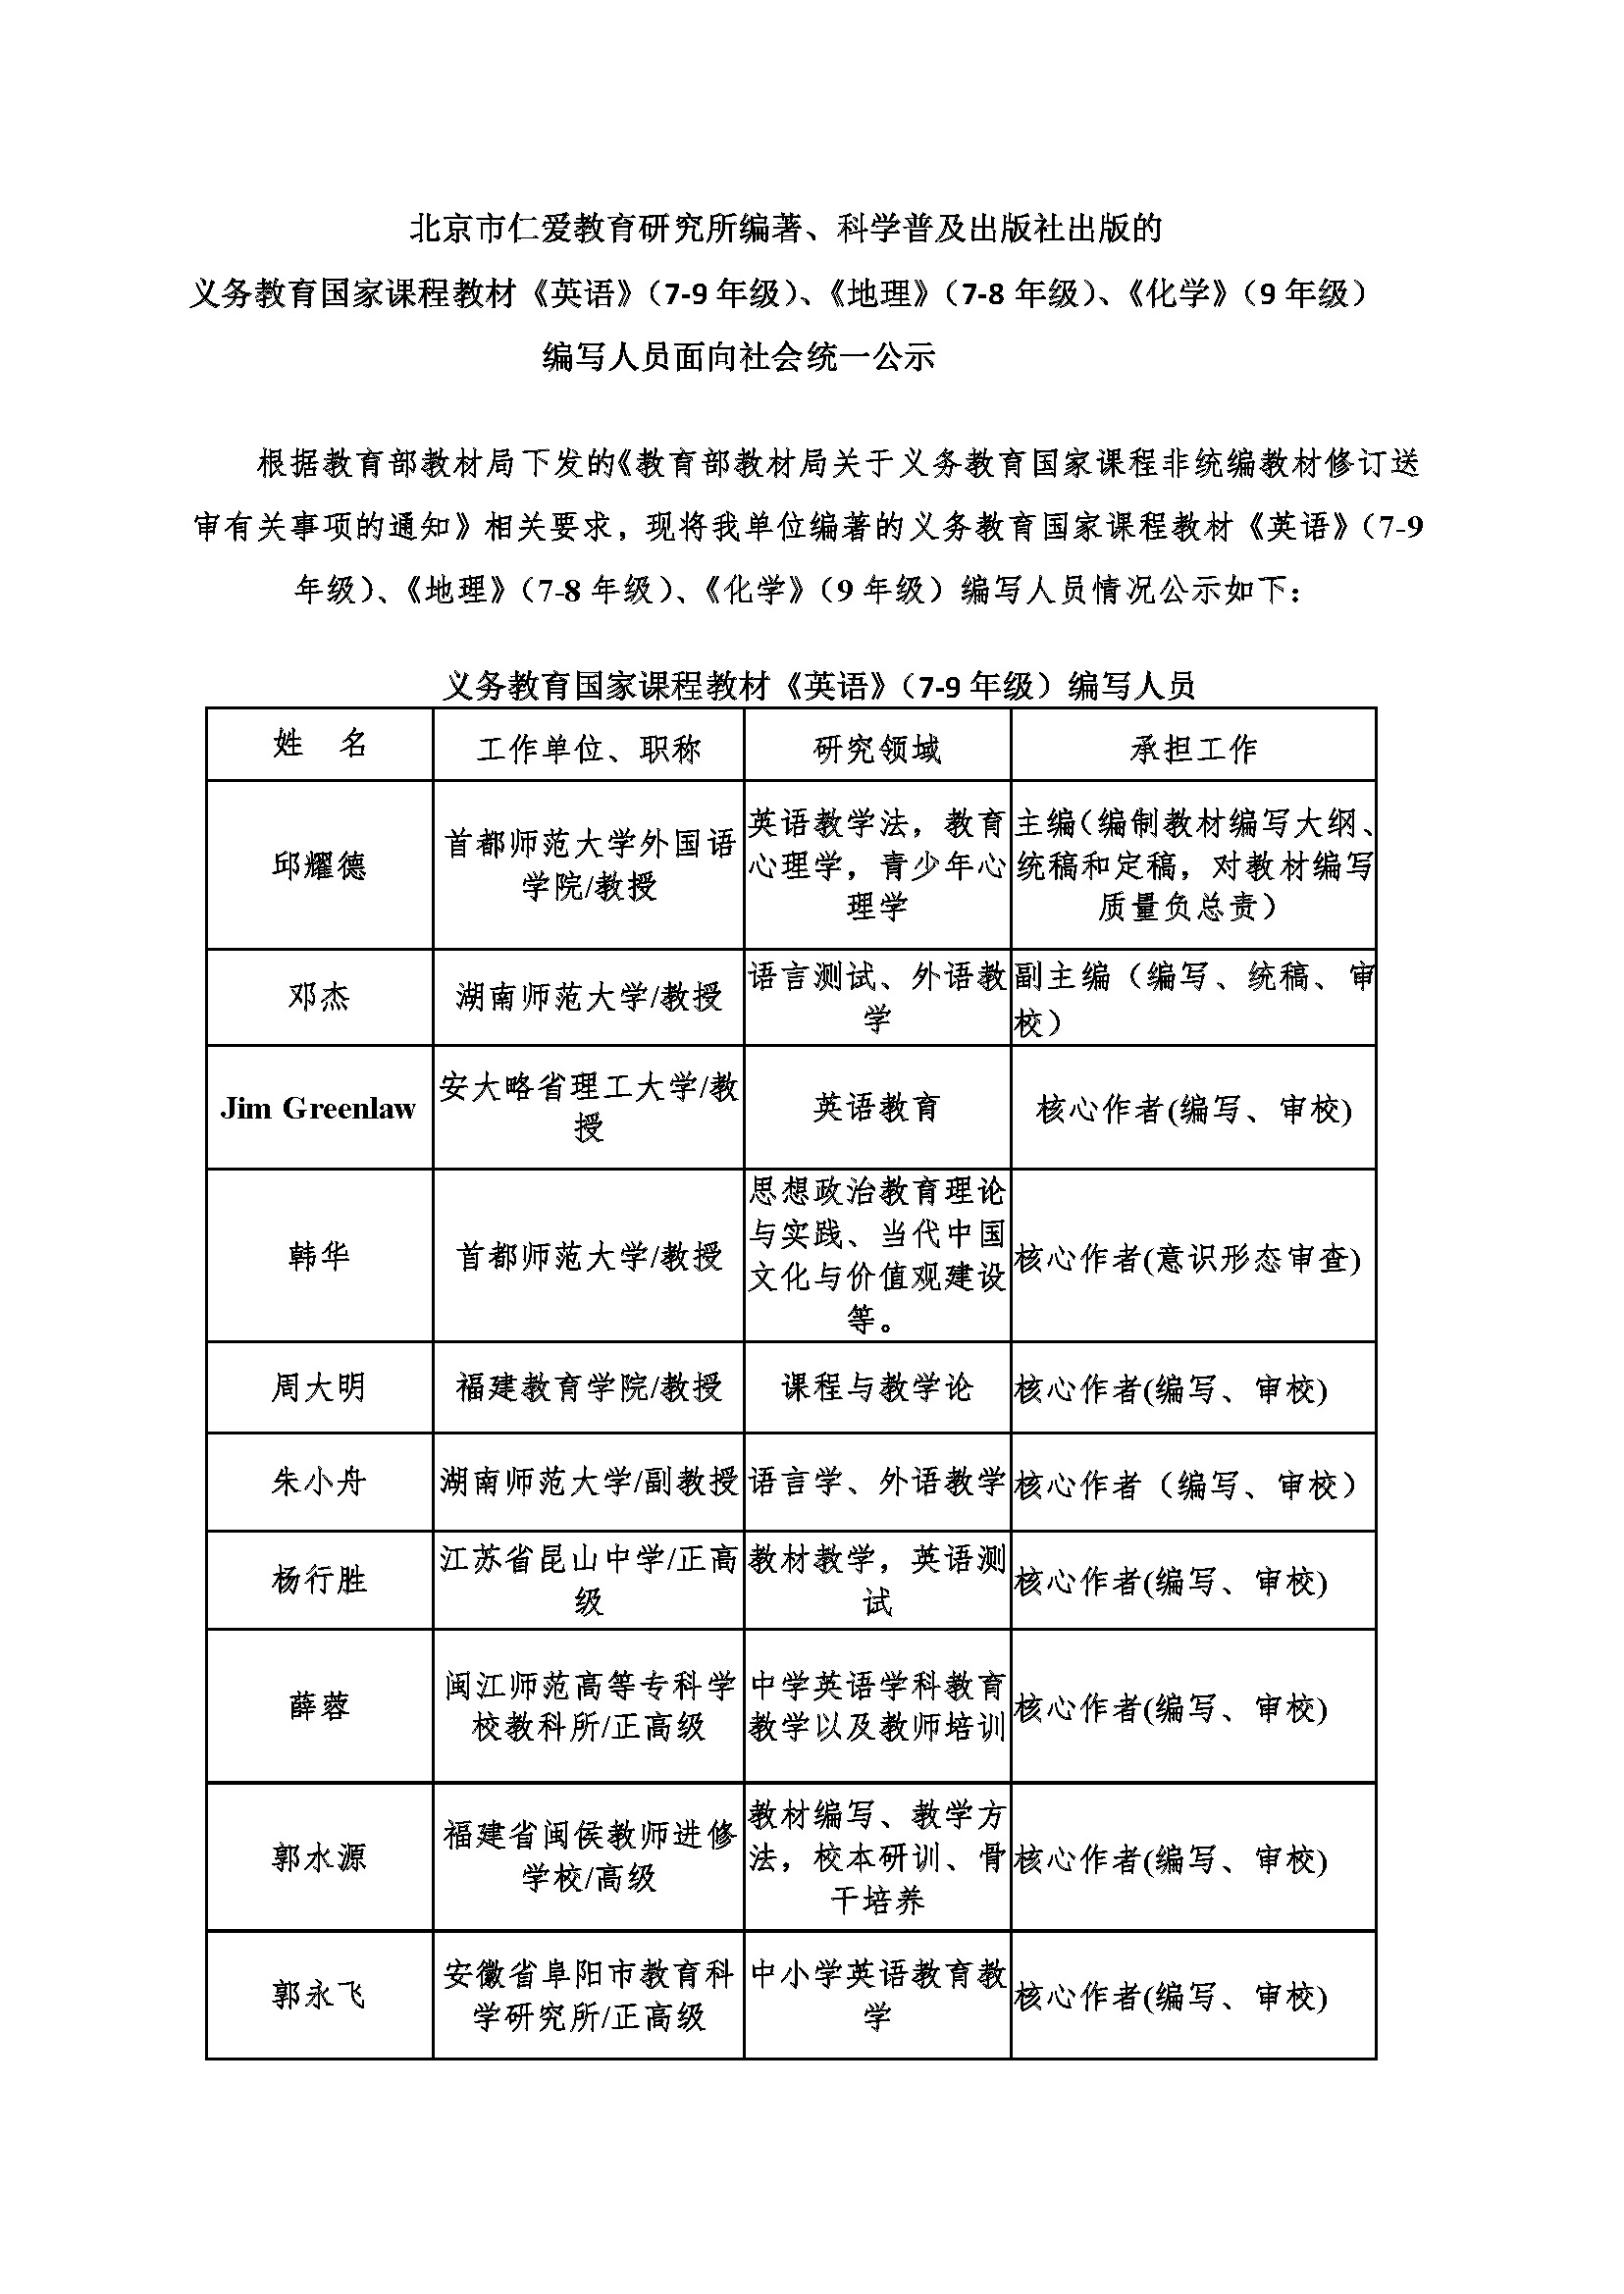 北京市仁爱教育研究所编著、科学普及出版社出版的 义务教育国家课程教材《英语》（7-9年级）、《地理》（7-8年级）、《化学》（9年级） 	    编写人员面向社会统一公示(图1)